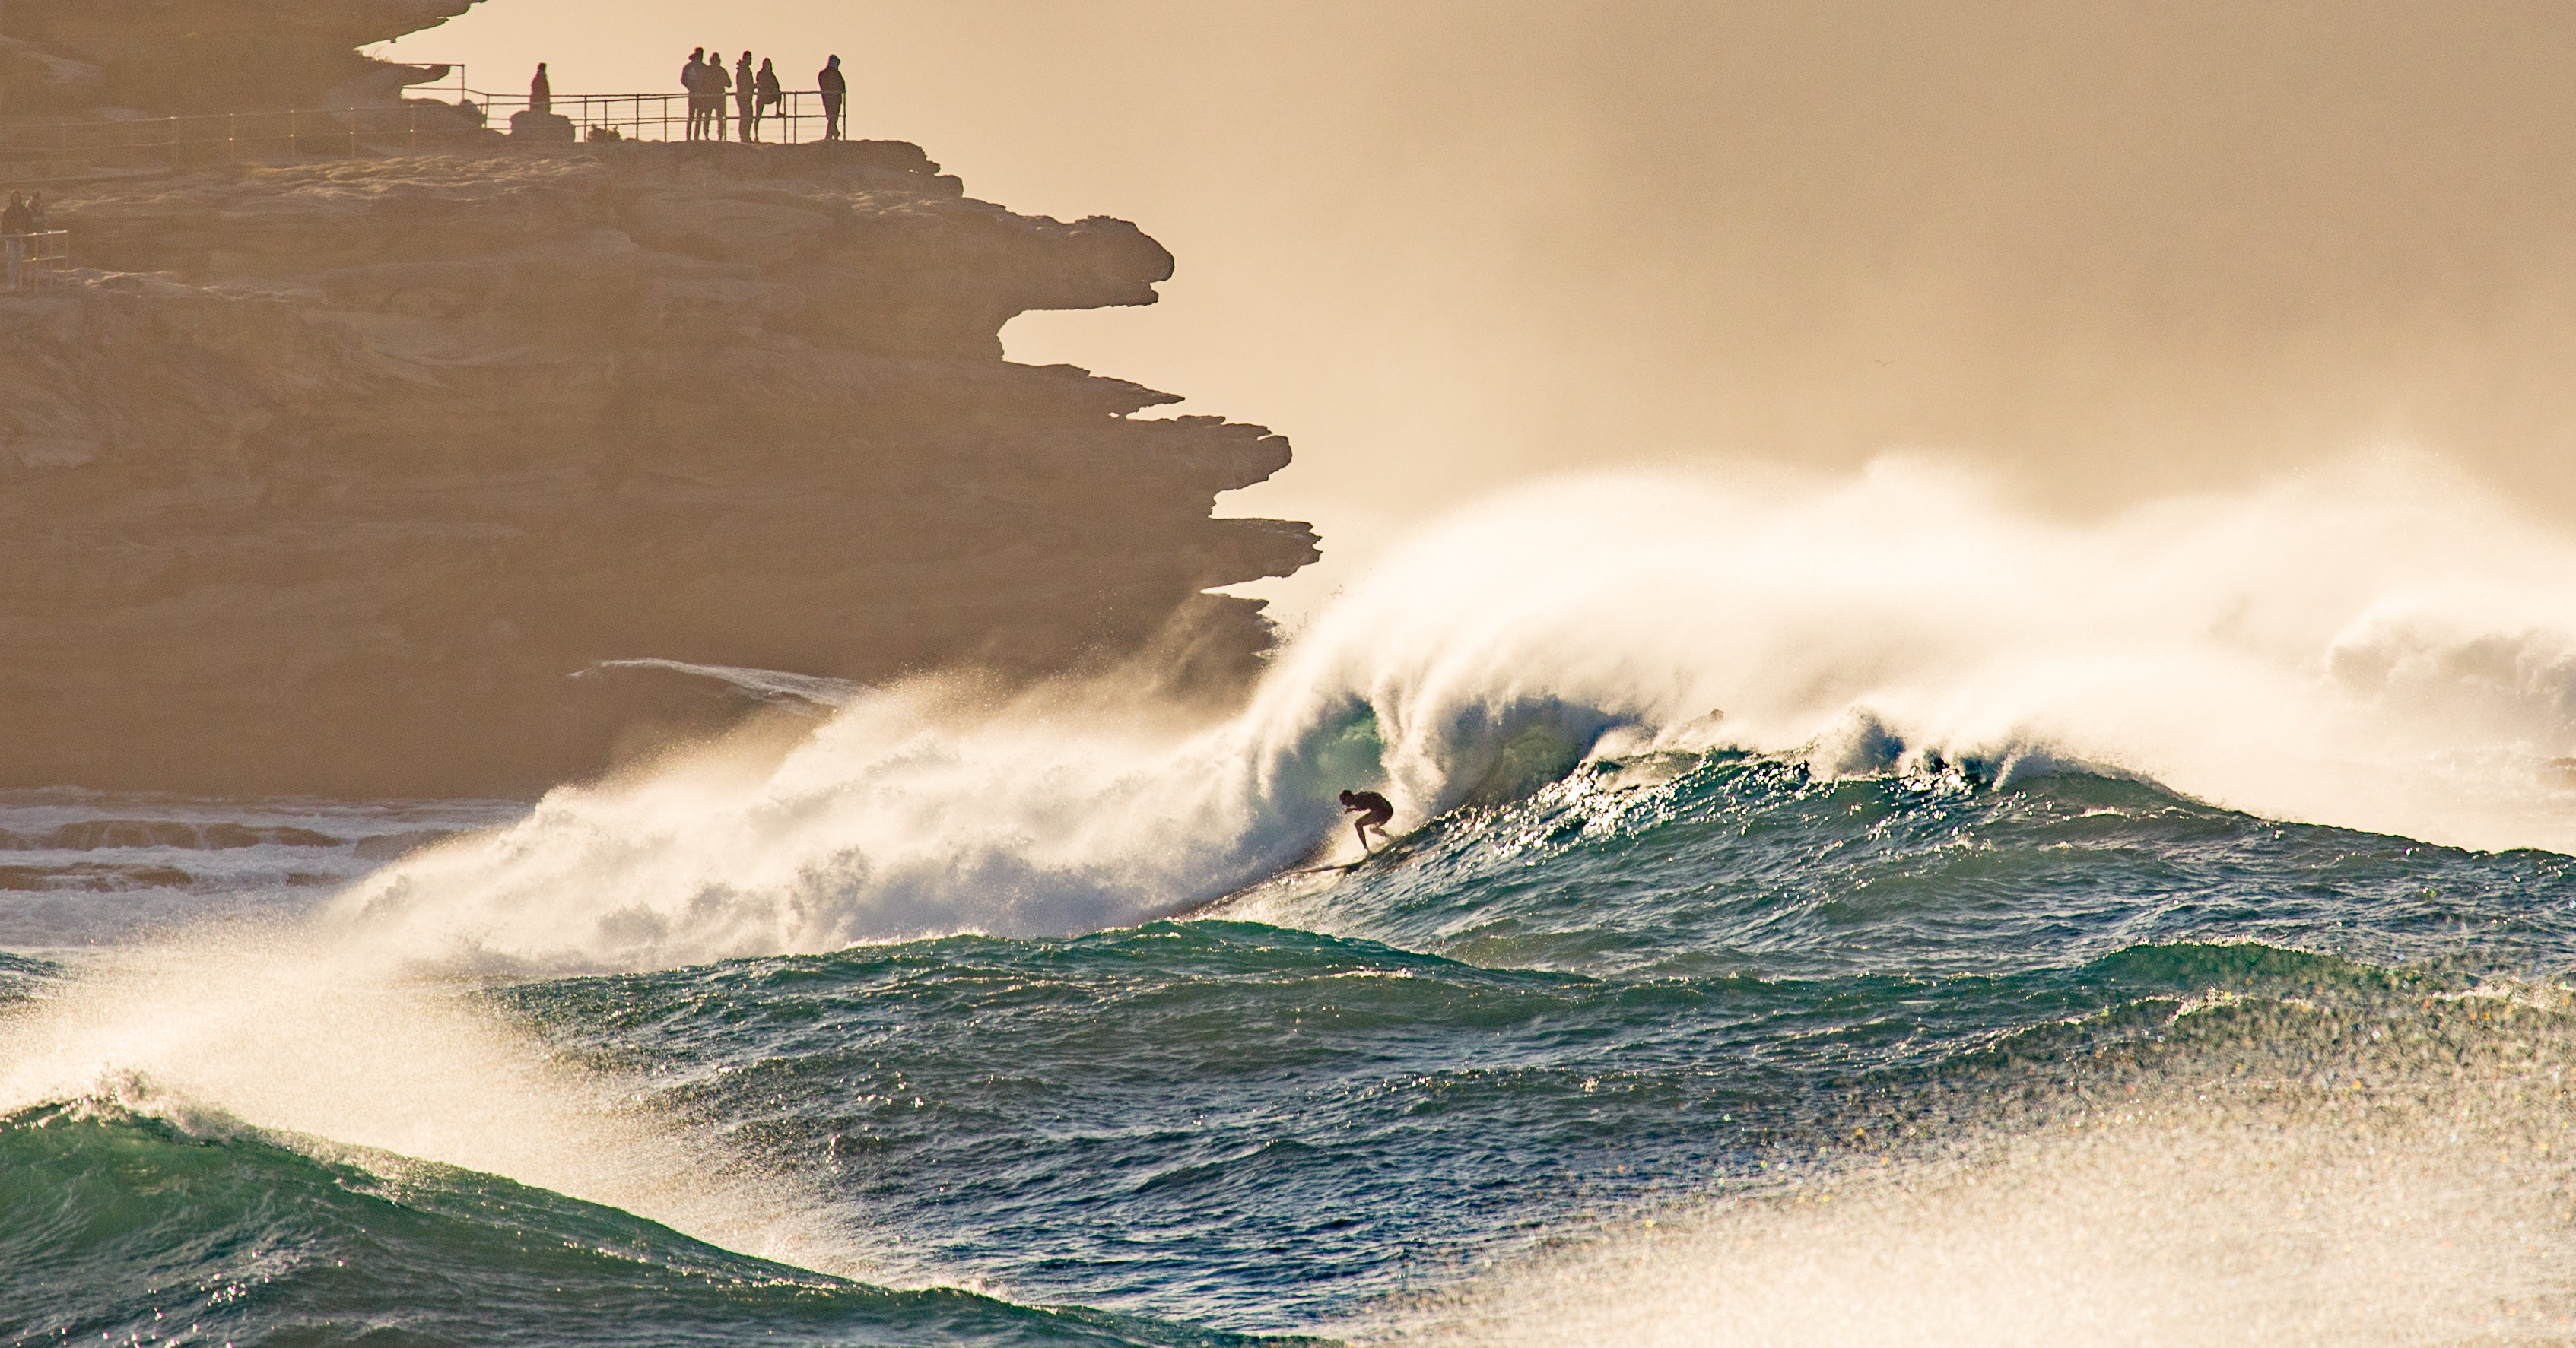 Big Wave Surfer braves massive swell at Ben Buckler by @hotndelicious